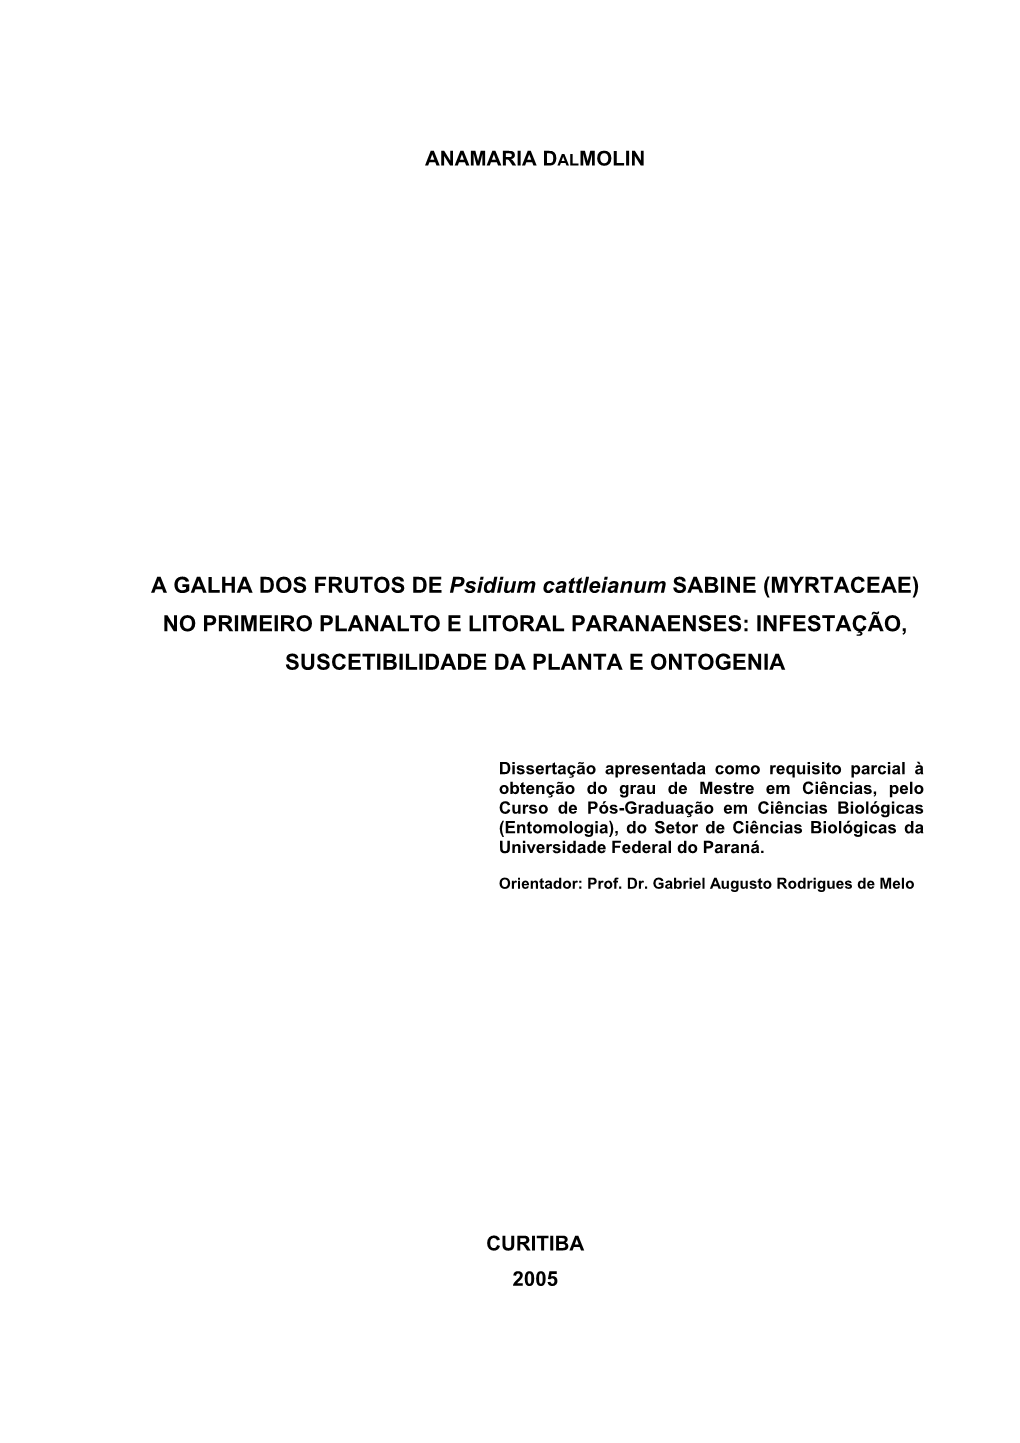 A GALHA DOS FRUTOS DE Psidium Cattleianum SABINE (MYRTACEAE) NO PRIMEIRO PLANALTO E LITORAL PARANAENSES: INFESTAÇÃO, SUSCETIBILIDADE DA PLANTA E ONTOGENIA